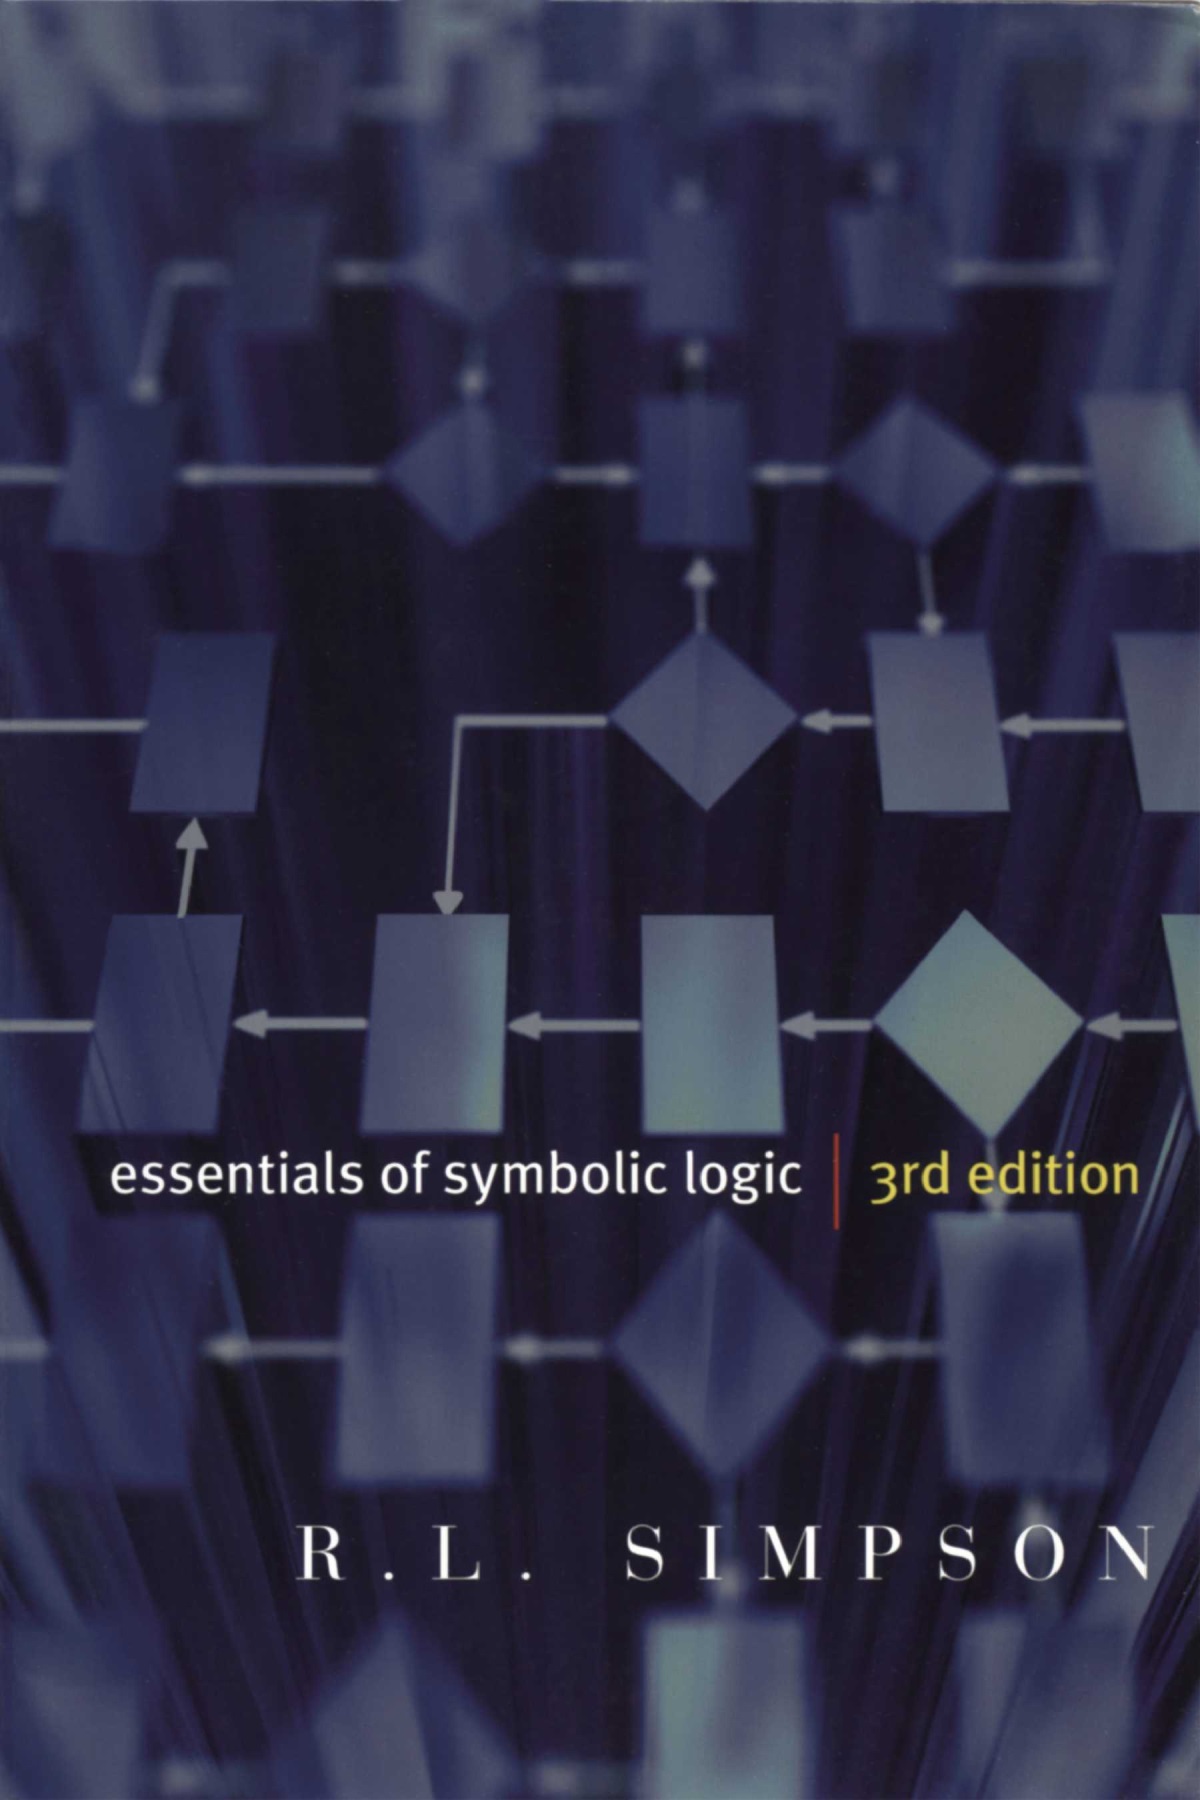 Essentials of Symbolic Logic – Third Edition